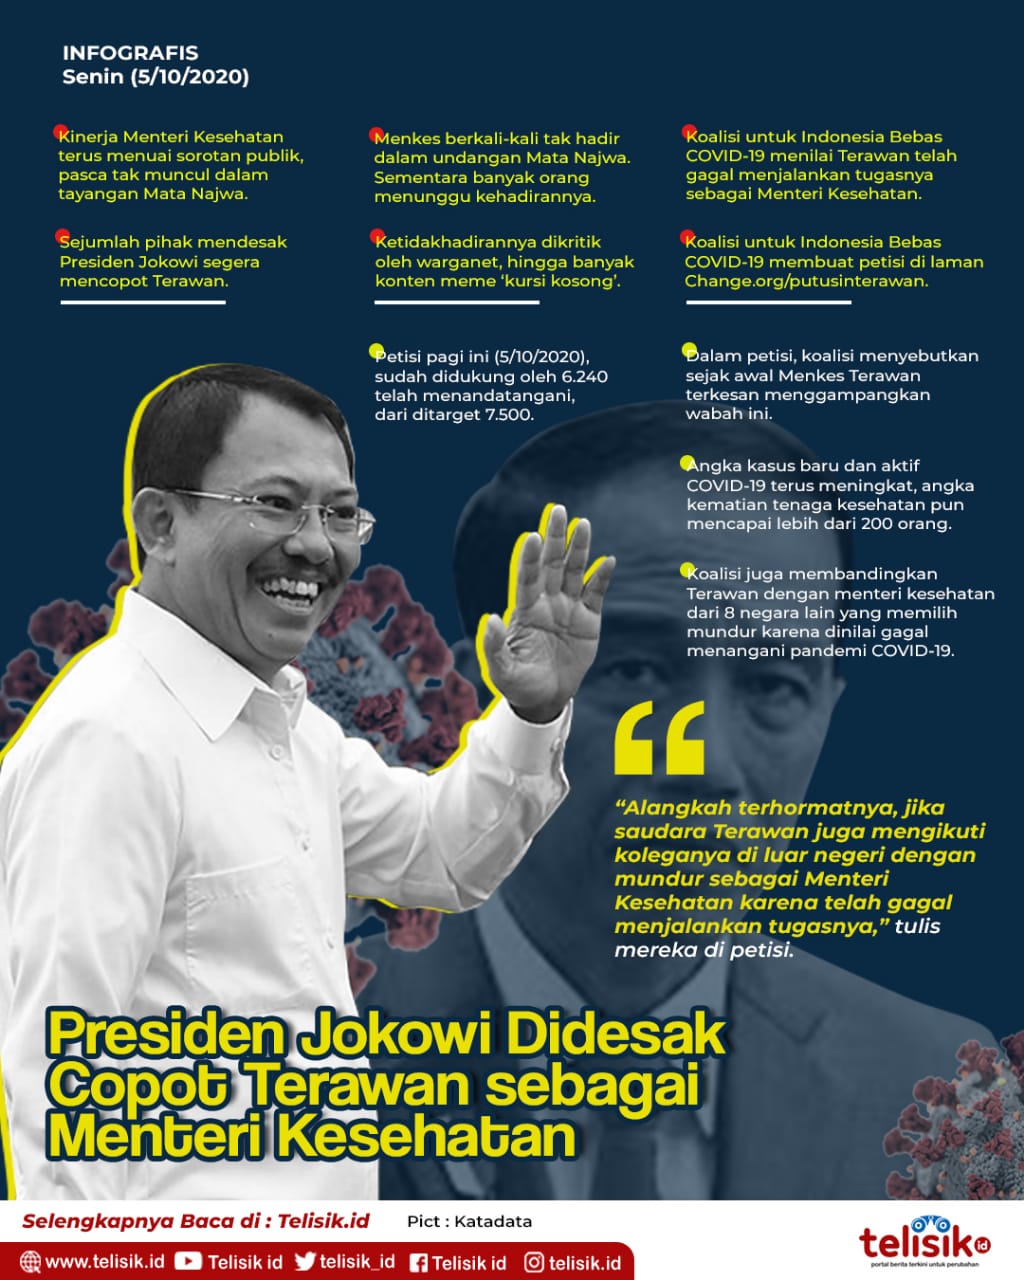 Infografis: Presiden Jokowi Didesak Copot Terawan sebagai Menteri Kesehatan